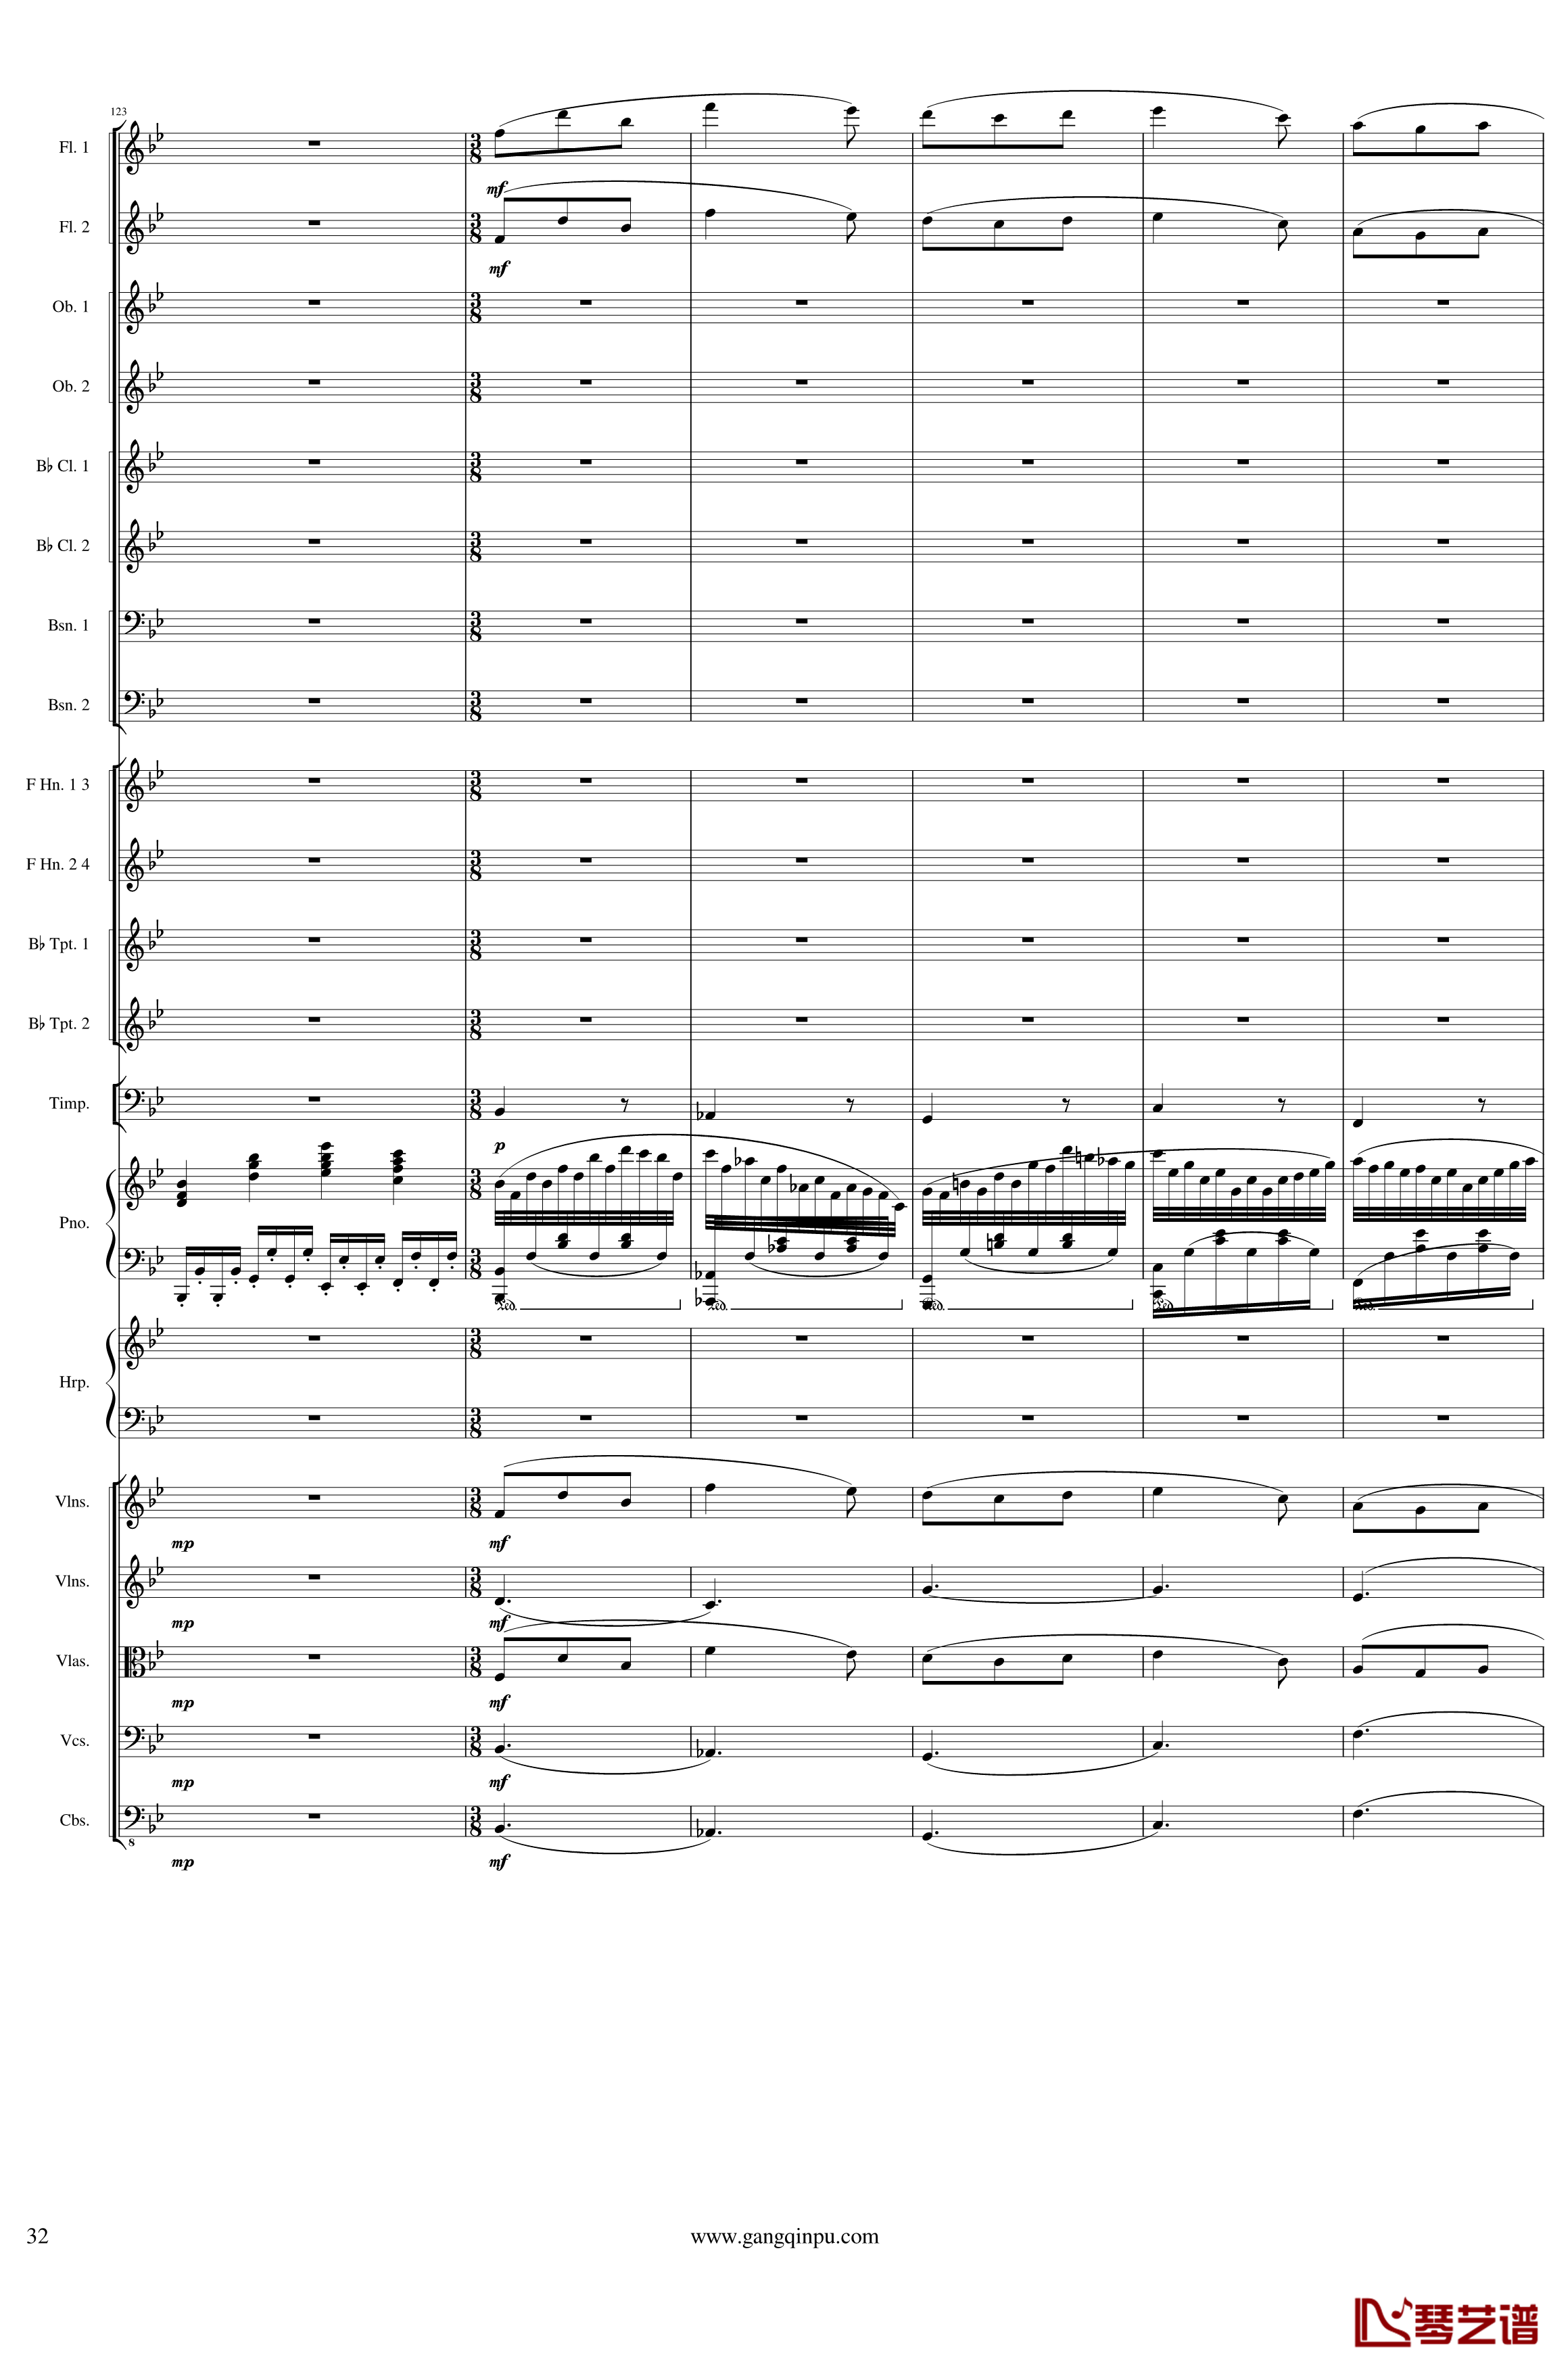 Symphonic Poem No.3, Op.91 Part 1钢琴谱-一个球32